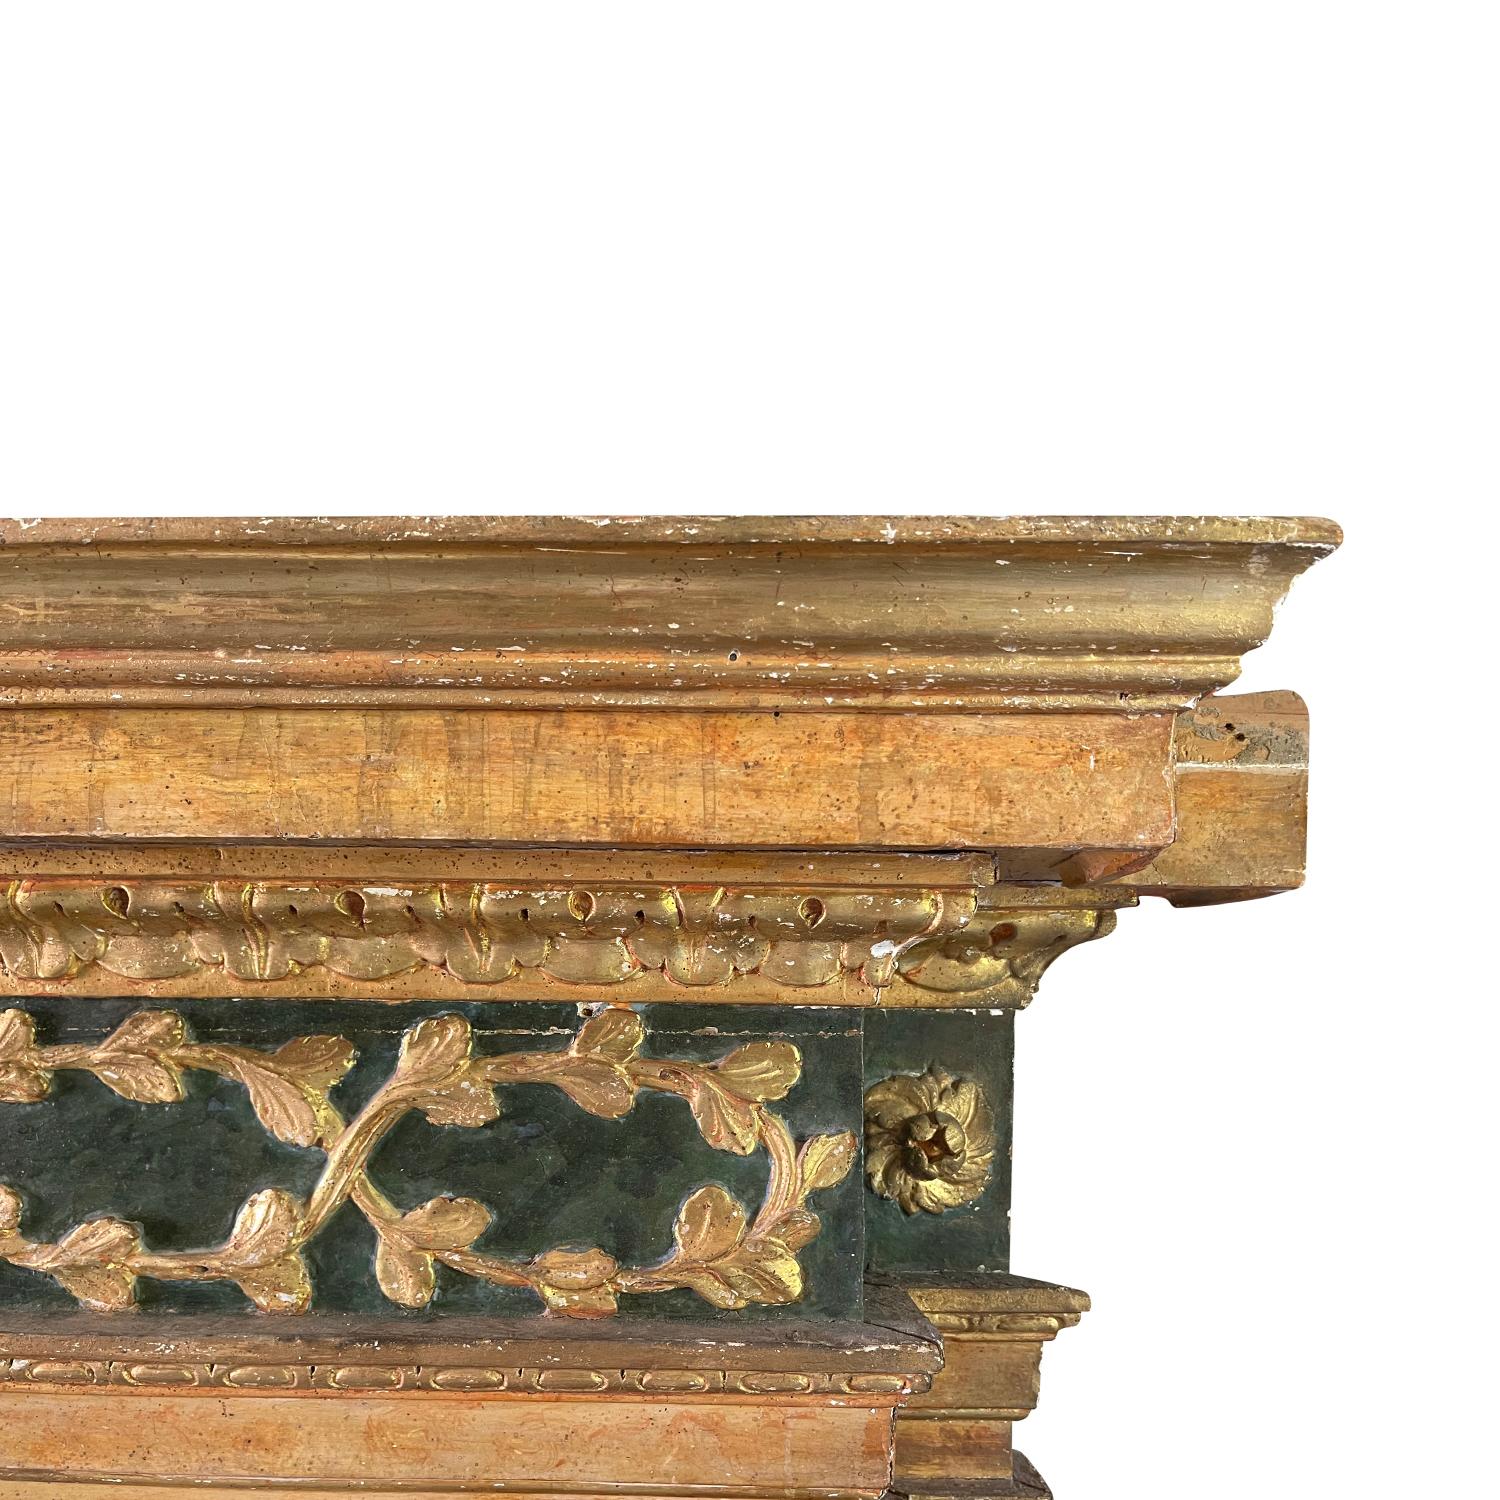 Wood 16th Century Italian Renaissance Fireplace Mantel Piece - Antique Surround For Sale